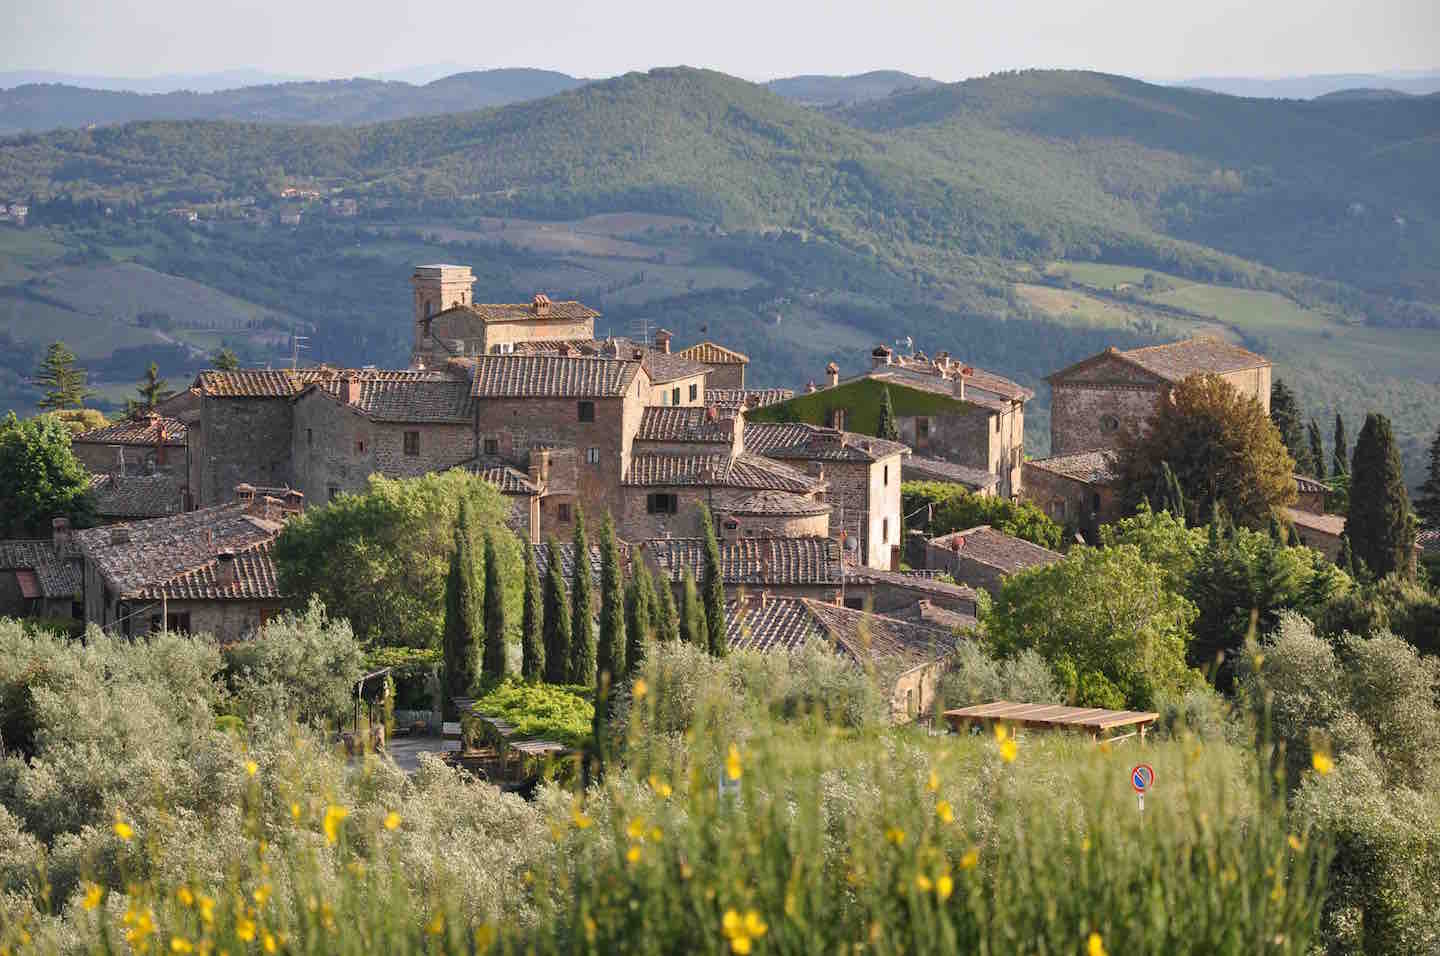 Il borgo di Montefioralle in Chianti è uno dei paesi da visitare in Toscana